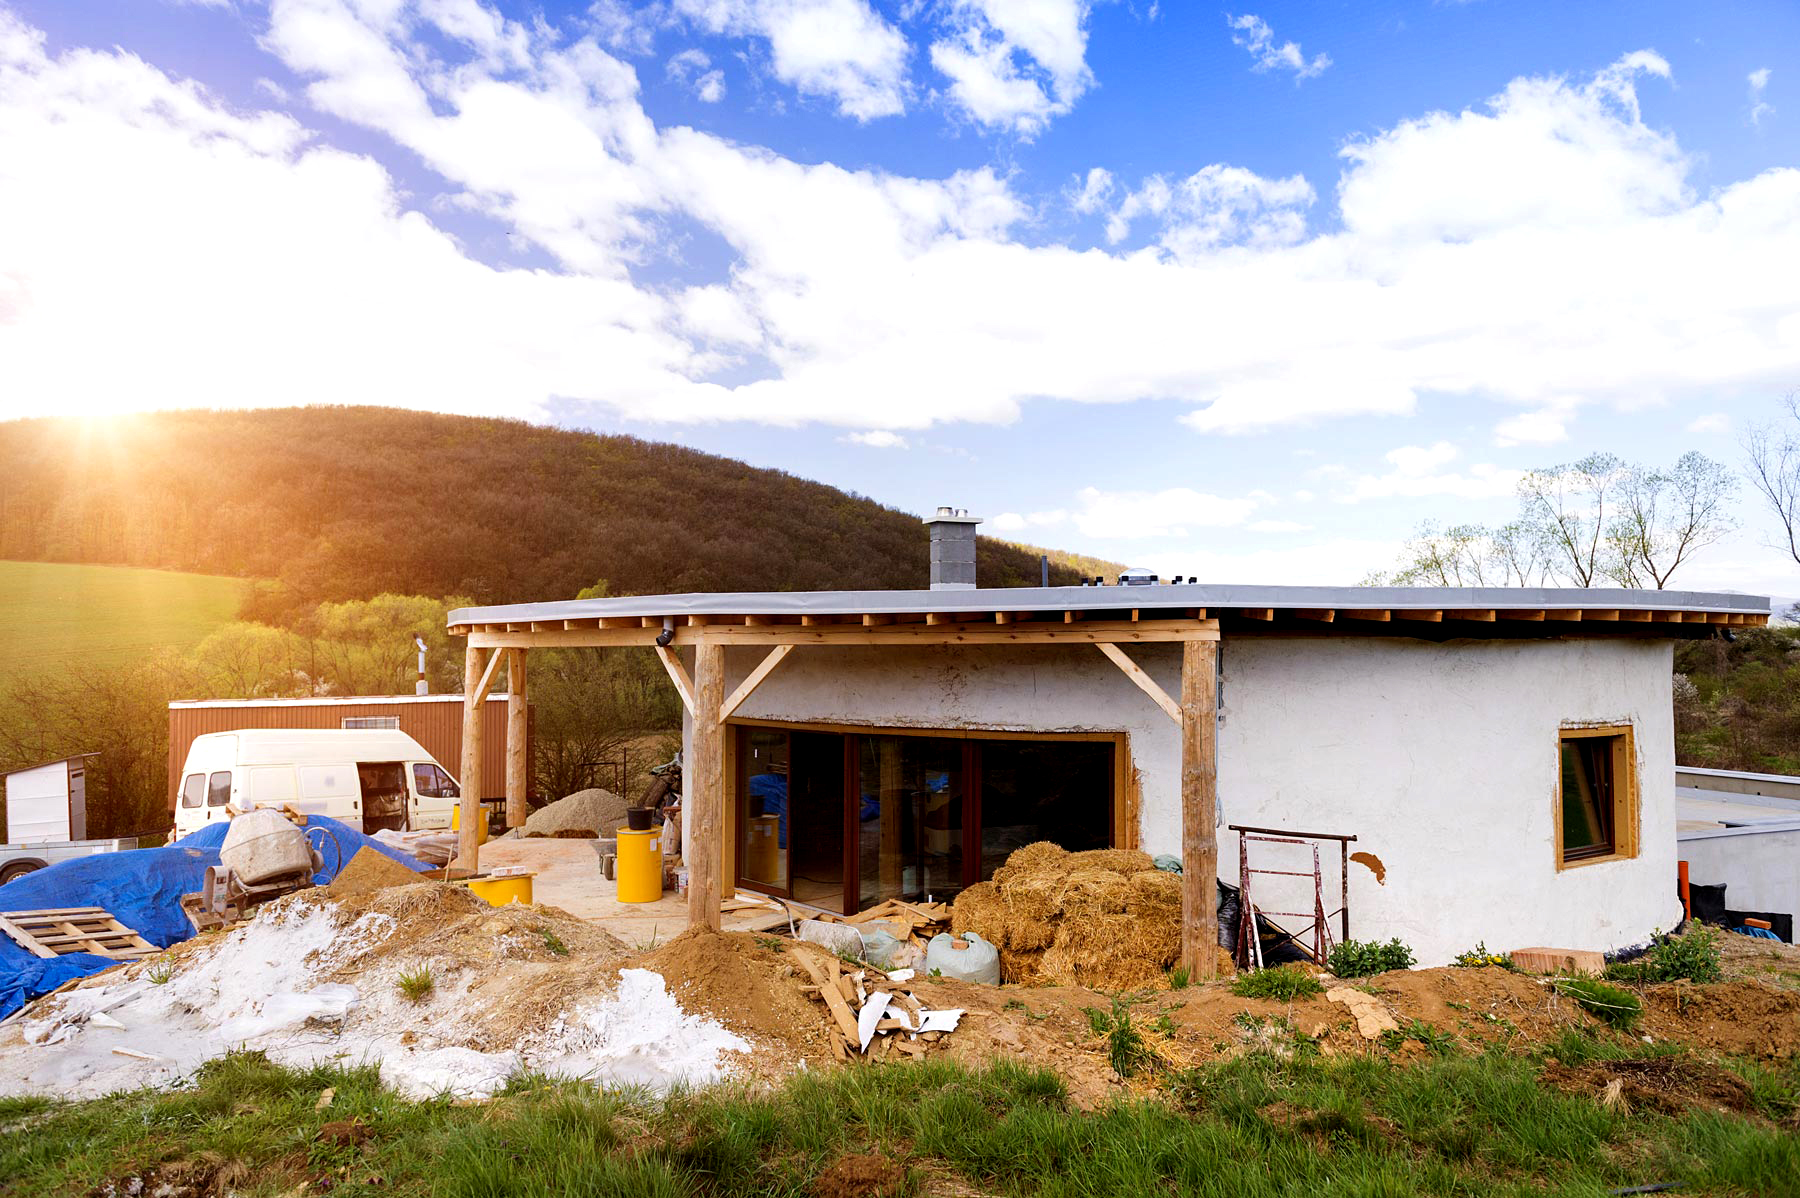 Casas Sustentables para Comunidades Indígenas en Chiapas, México | Twenergy